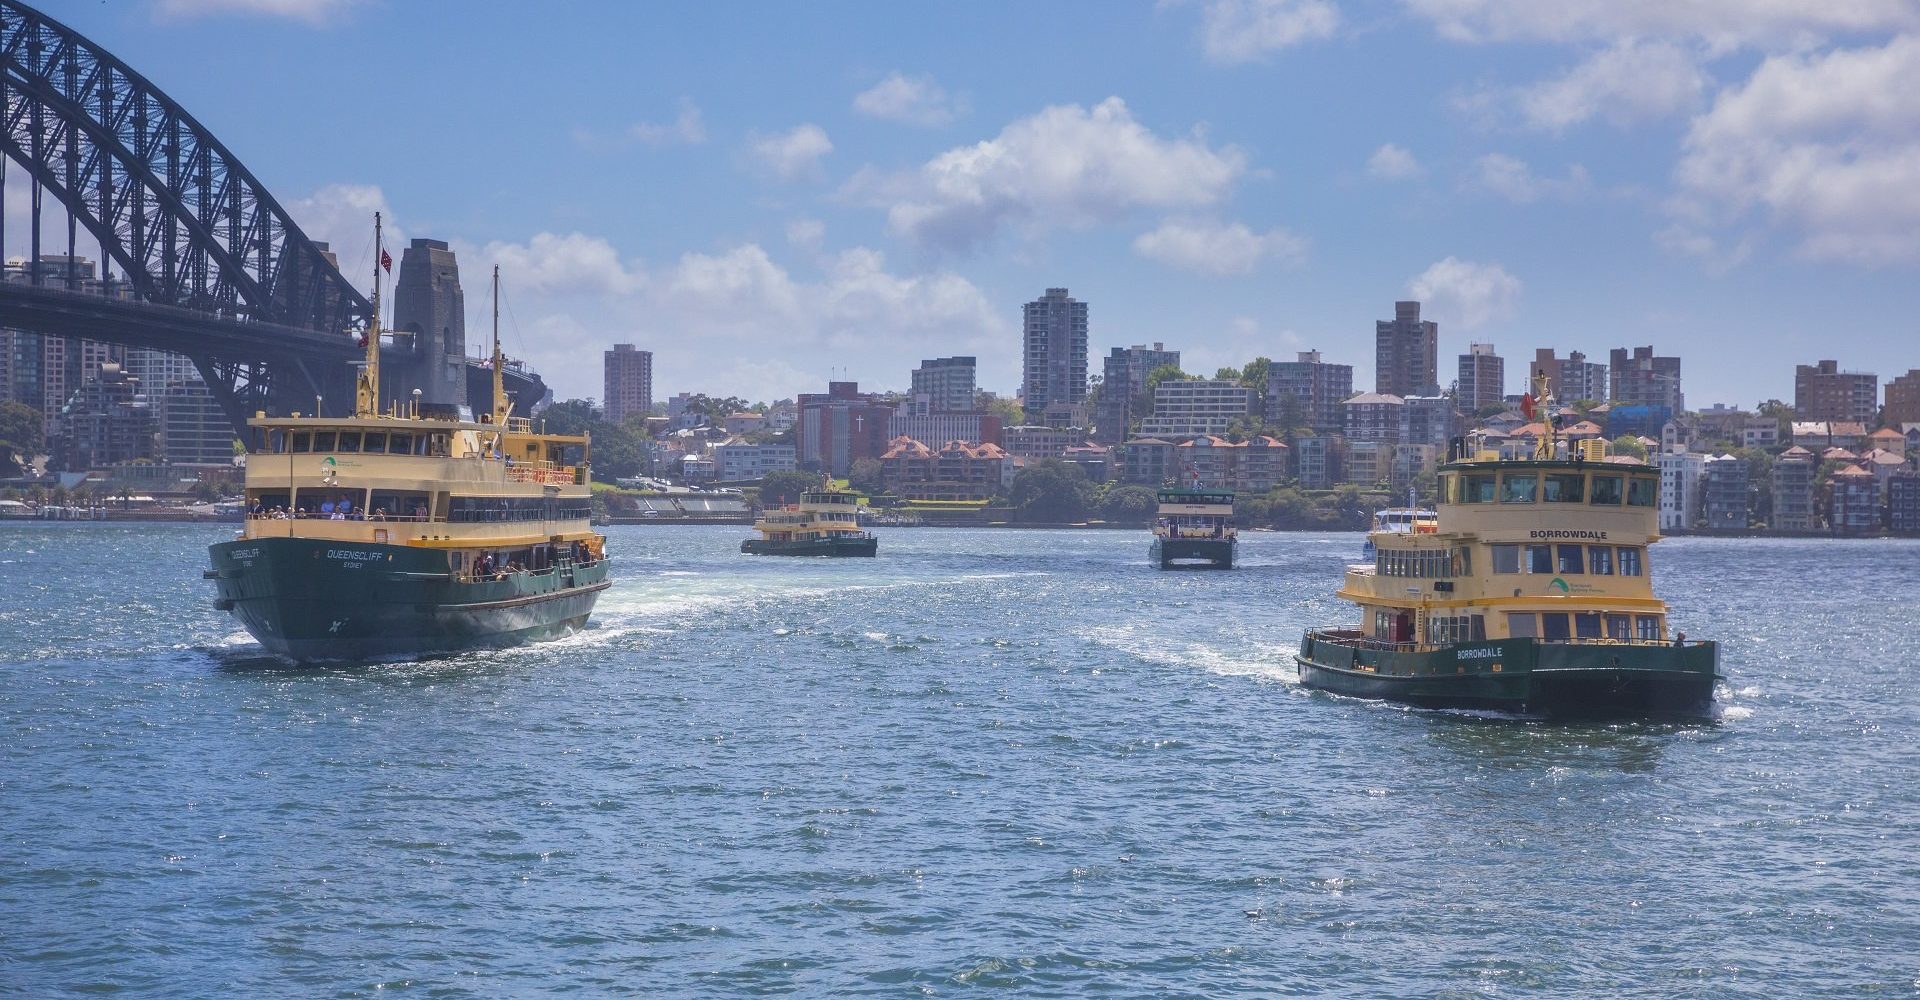 Transdev Sydney Ferries ferry boats bateaux jaunes et verts traversant la baie